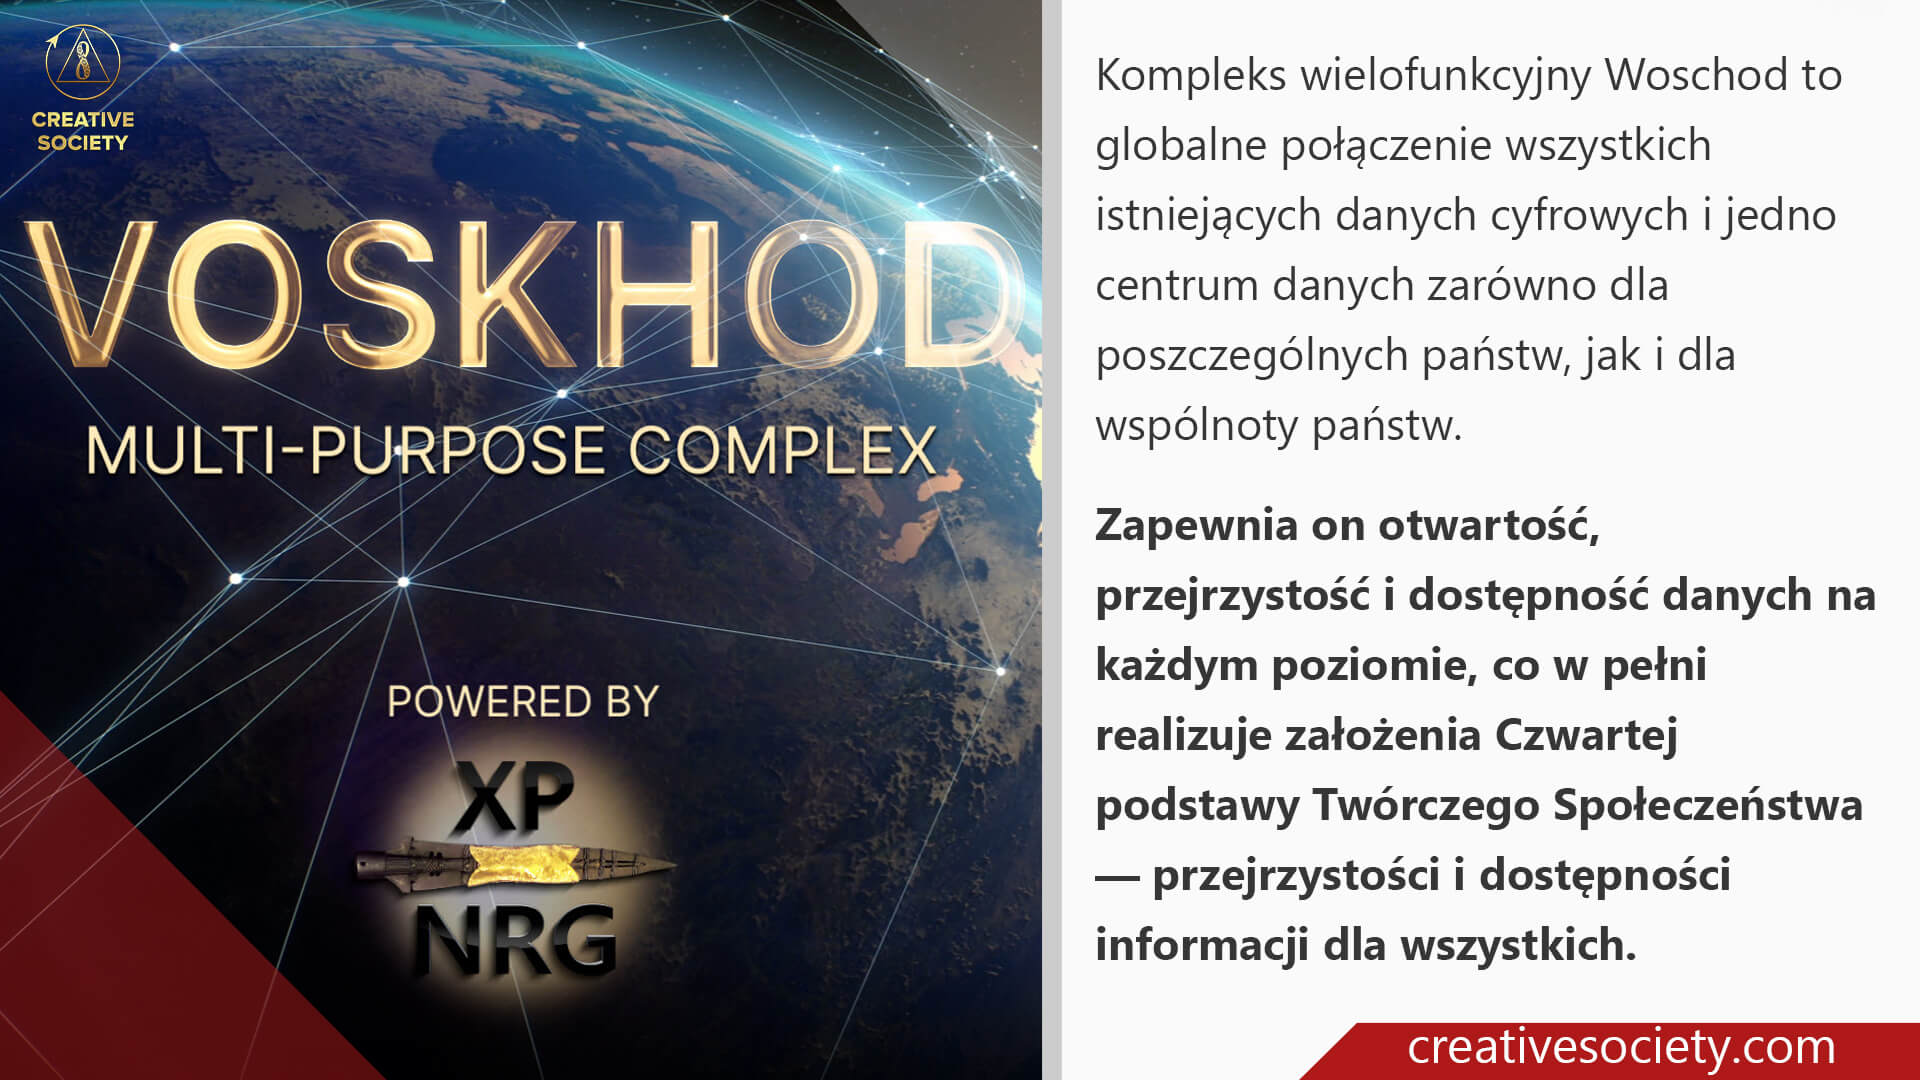 Voskhod multipurpose complex